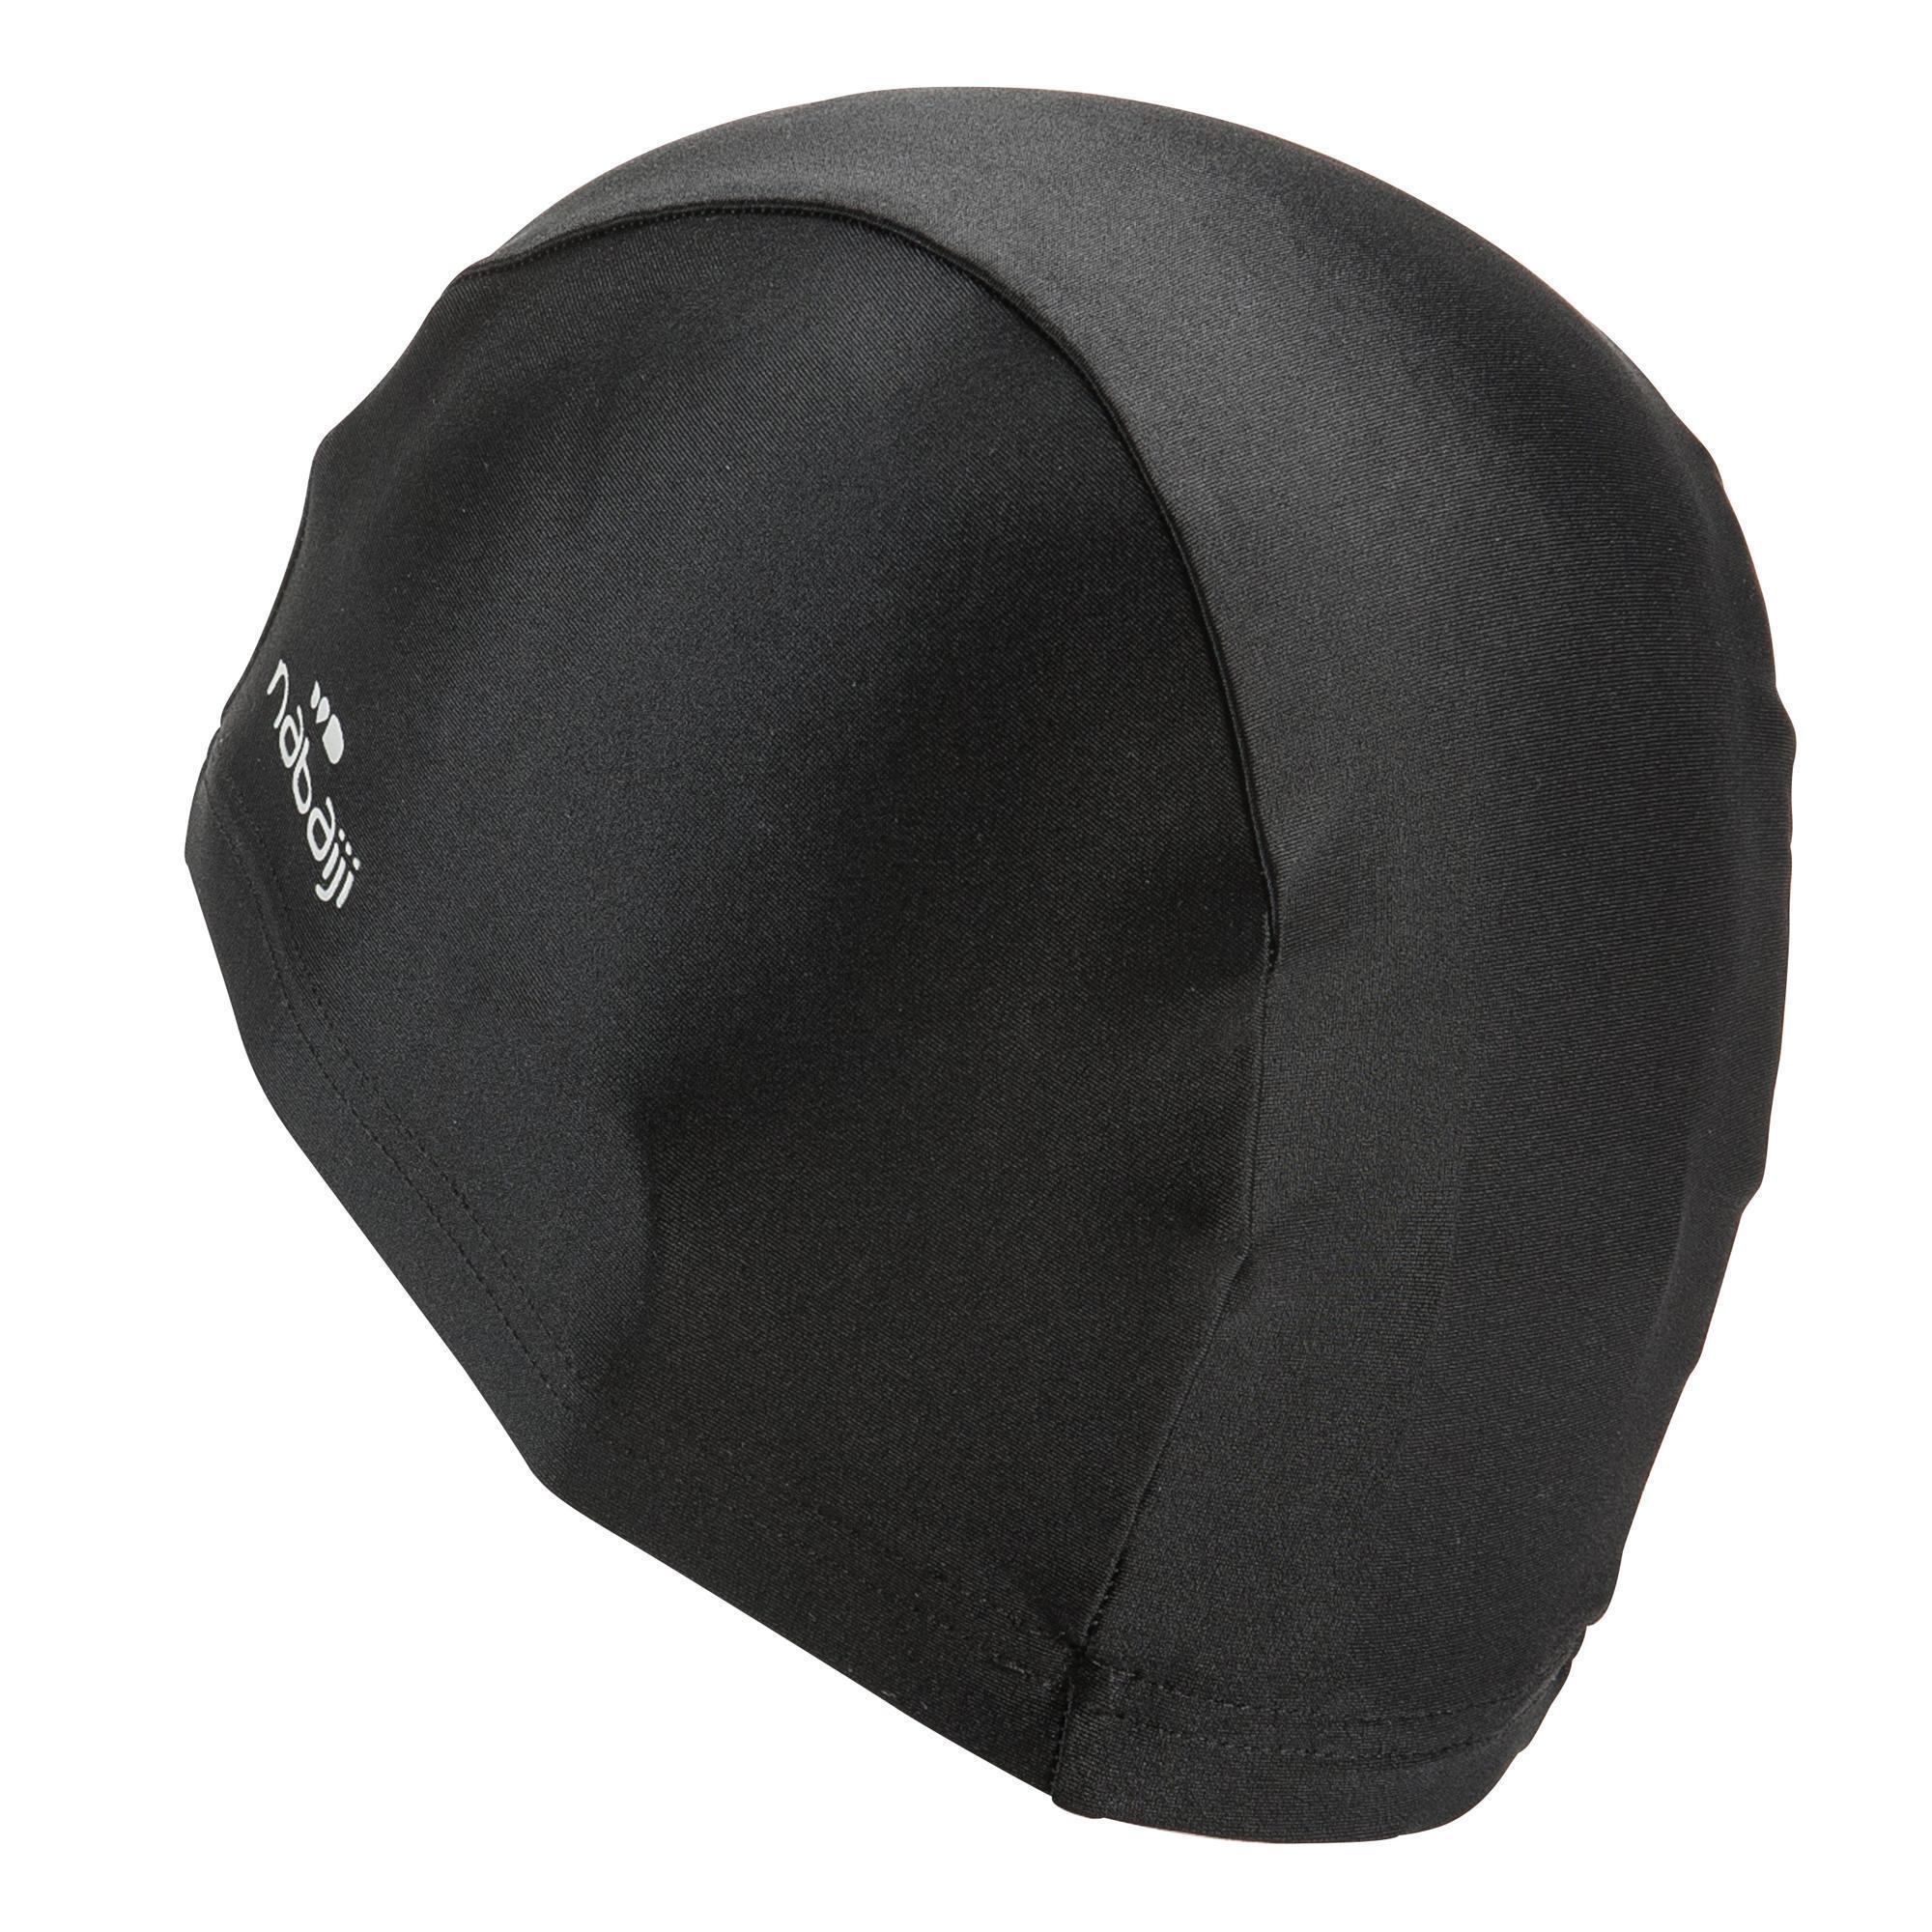 Mesh swim cap - plain fabric - black 7/8